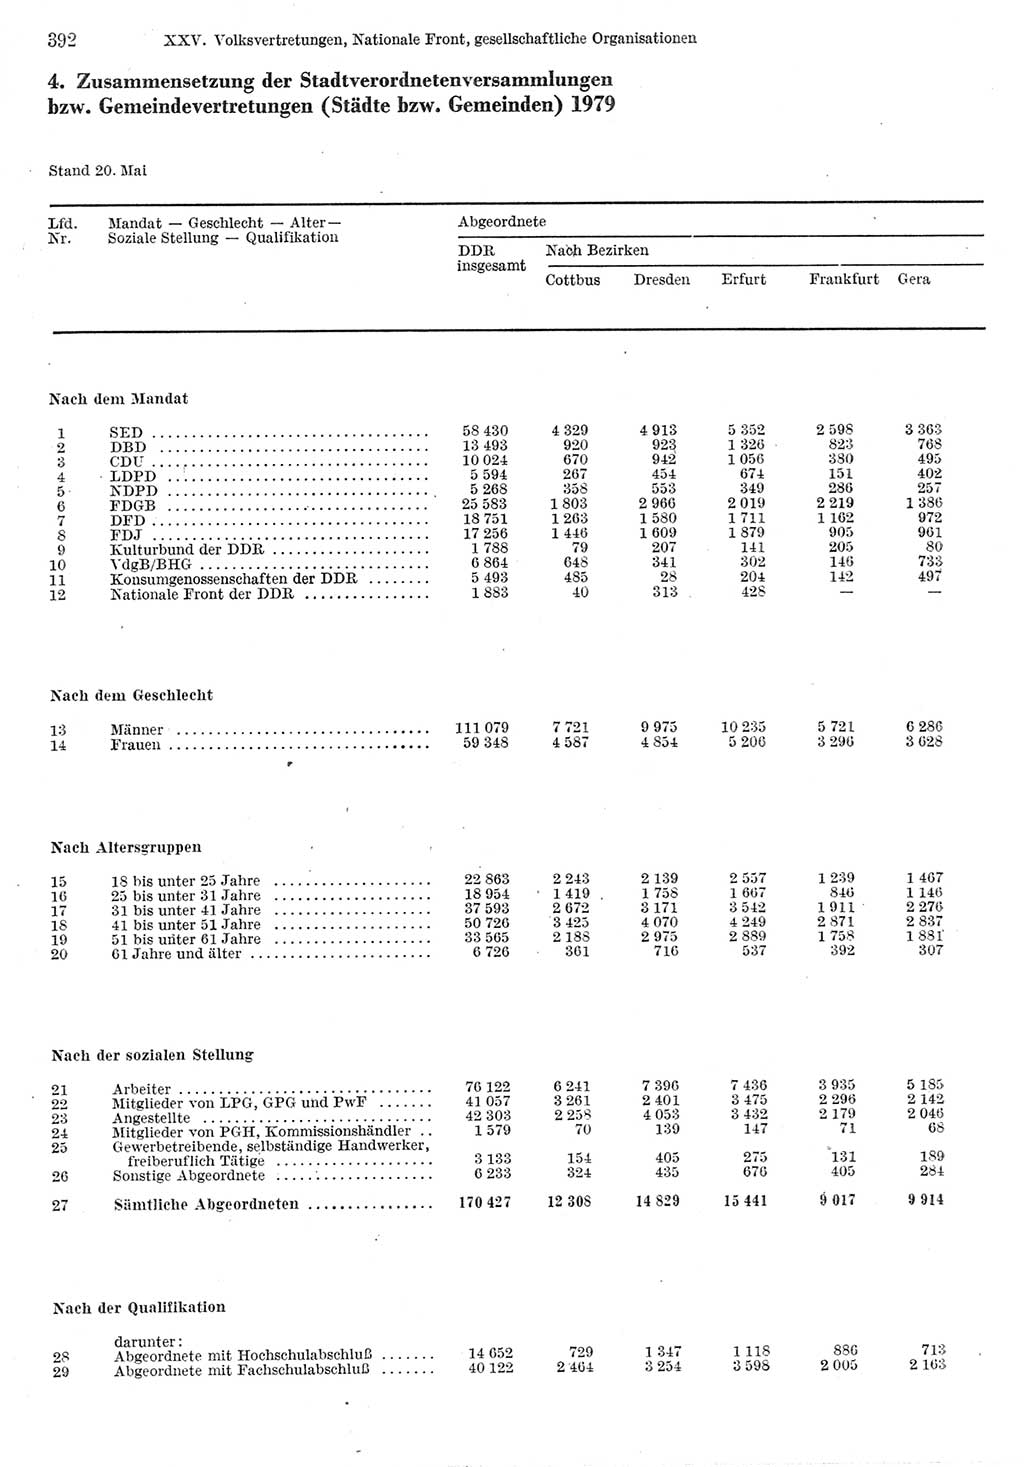 Statistisches Jahrbuch der Deutschen Demokratischen Republik (DDR) 1980, Seite 392 (Stat. Jb. DDR 1980, S. 392)